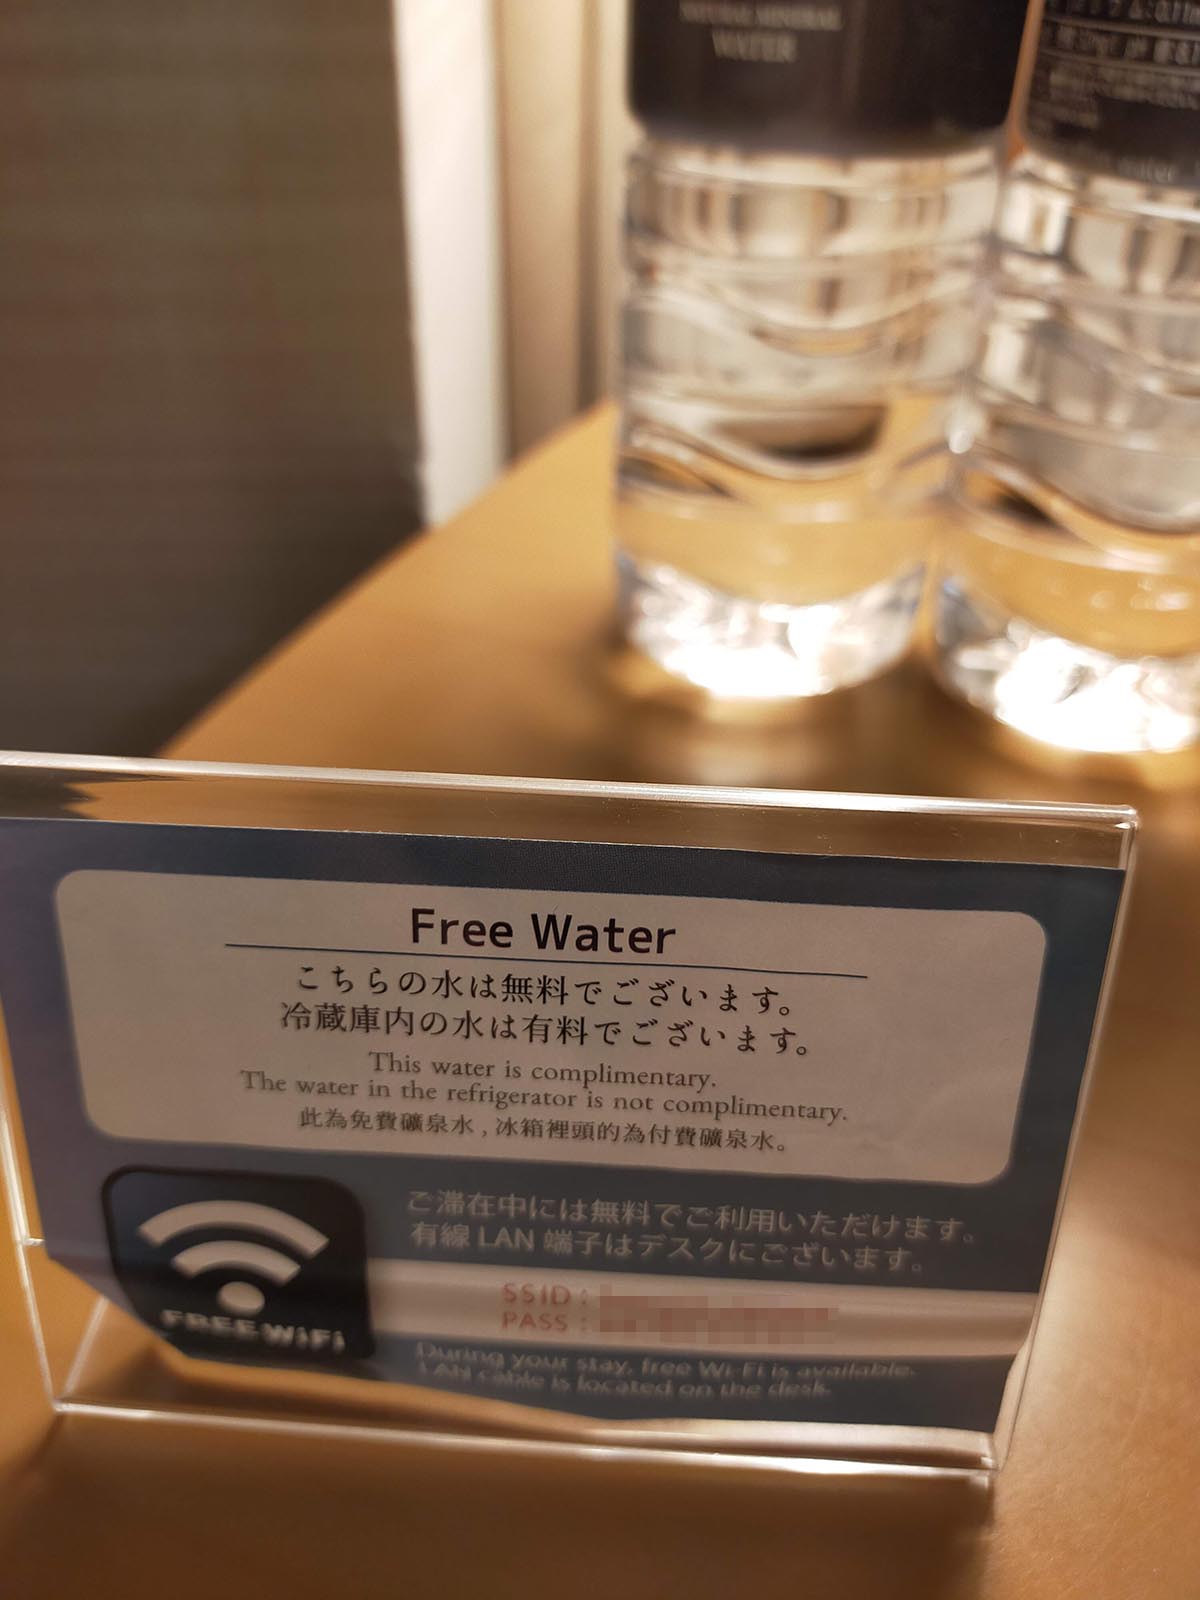 こちらの水は無料でございます。